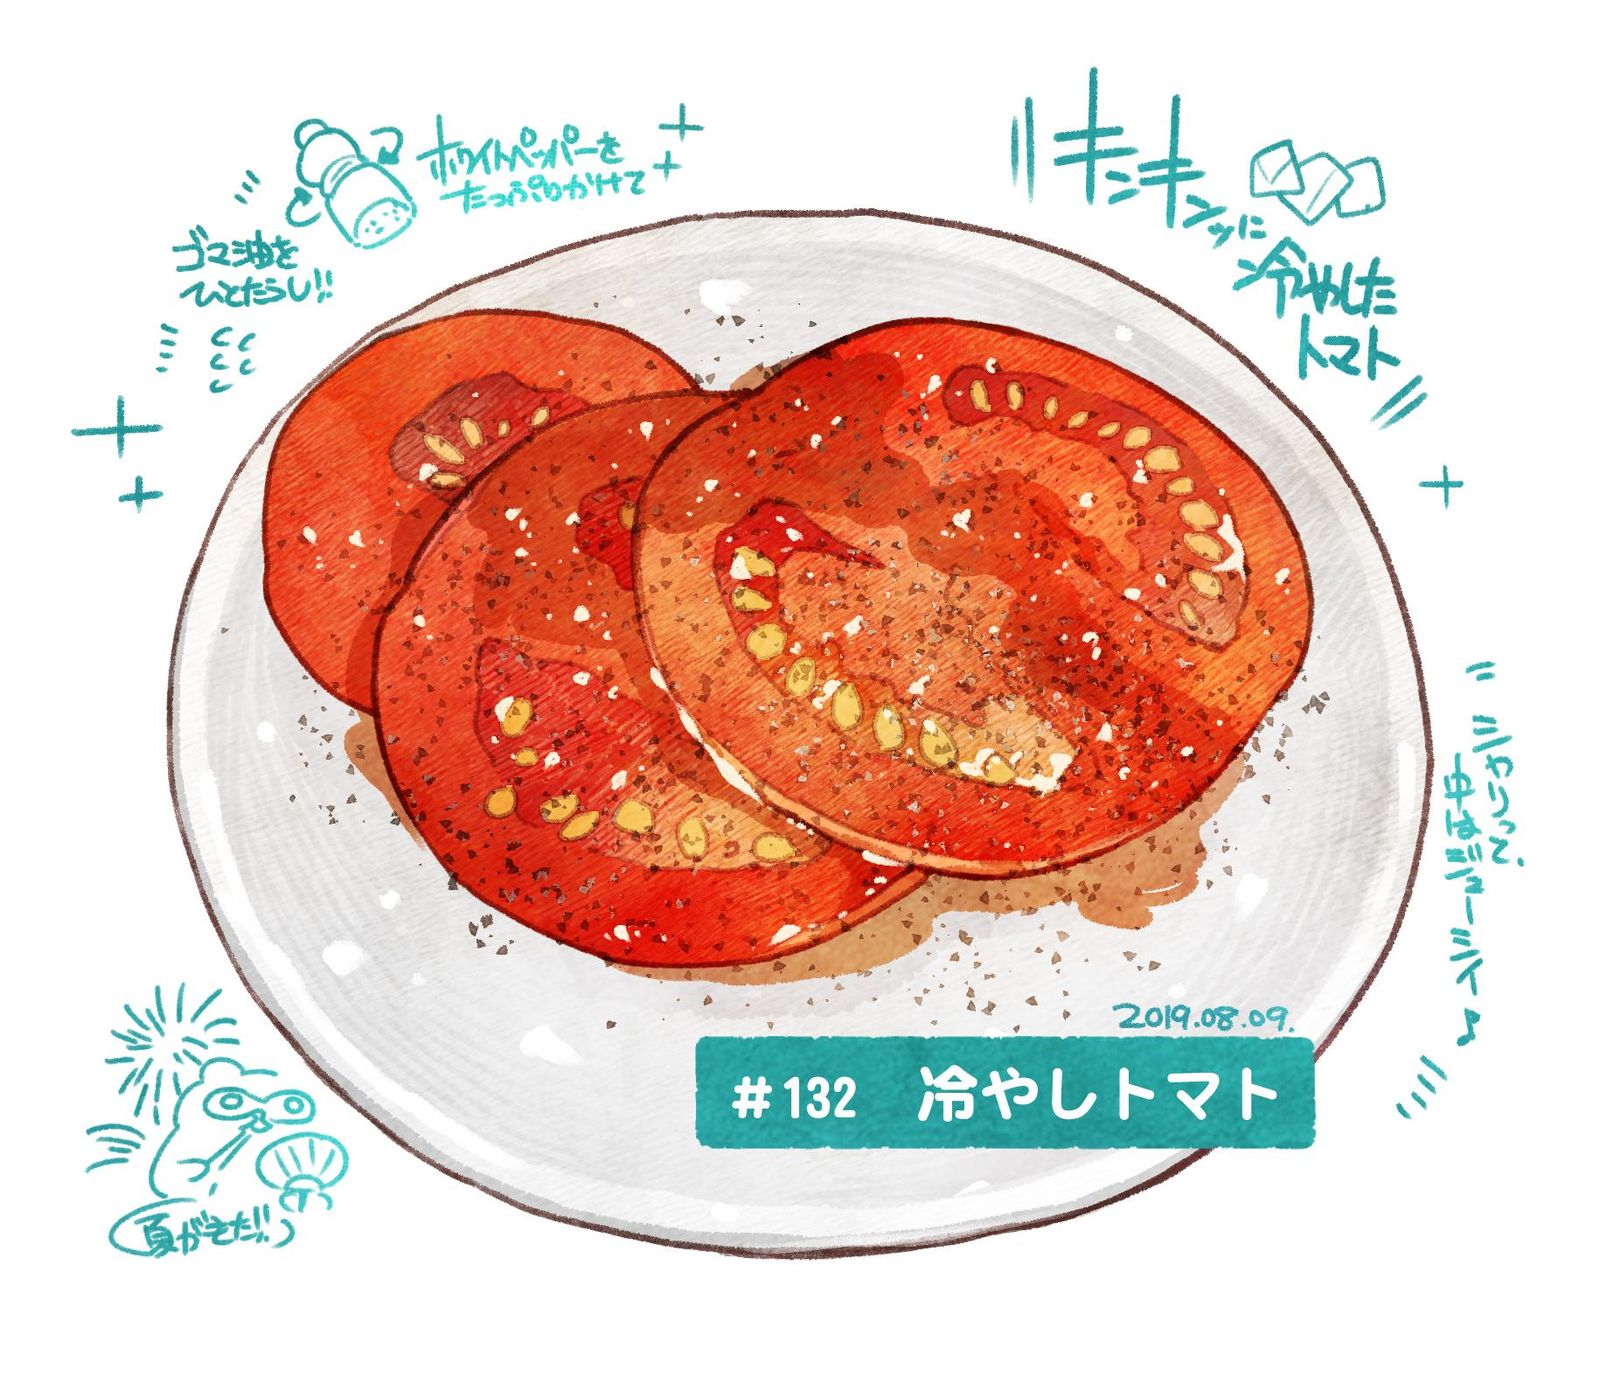 #日刊米饭与故事【第130-139餐】总结插画图片壁纸